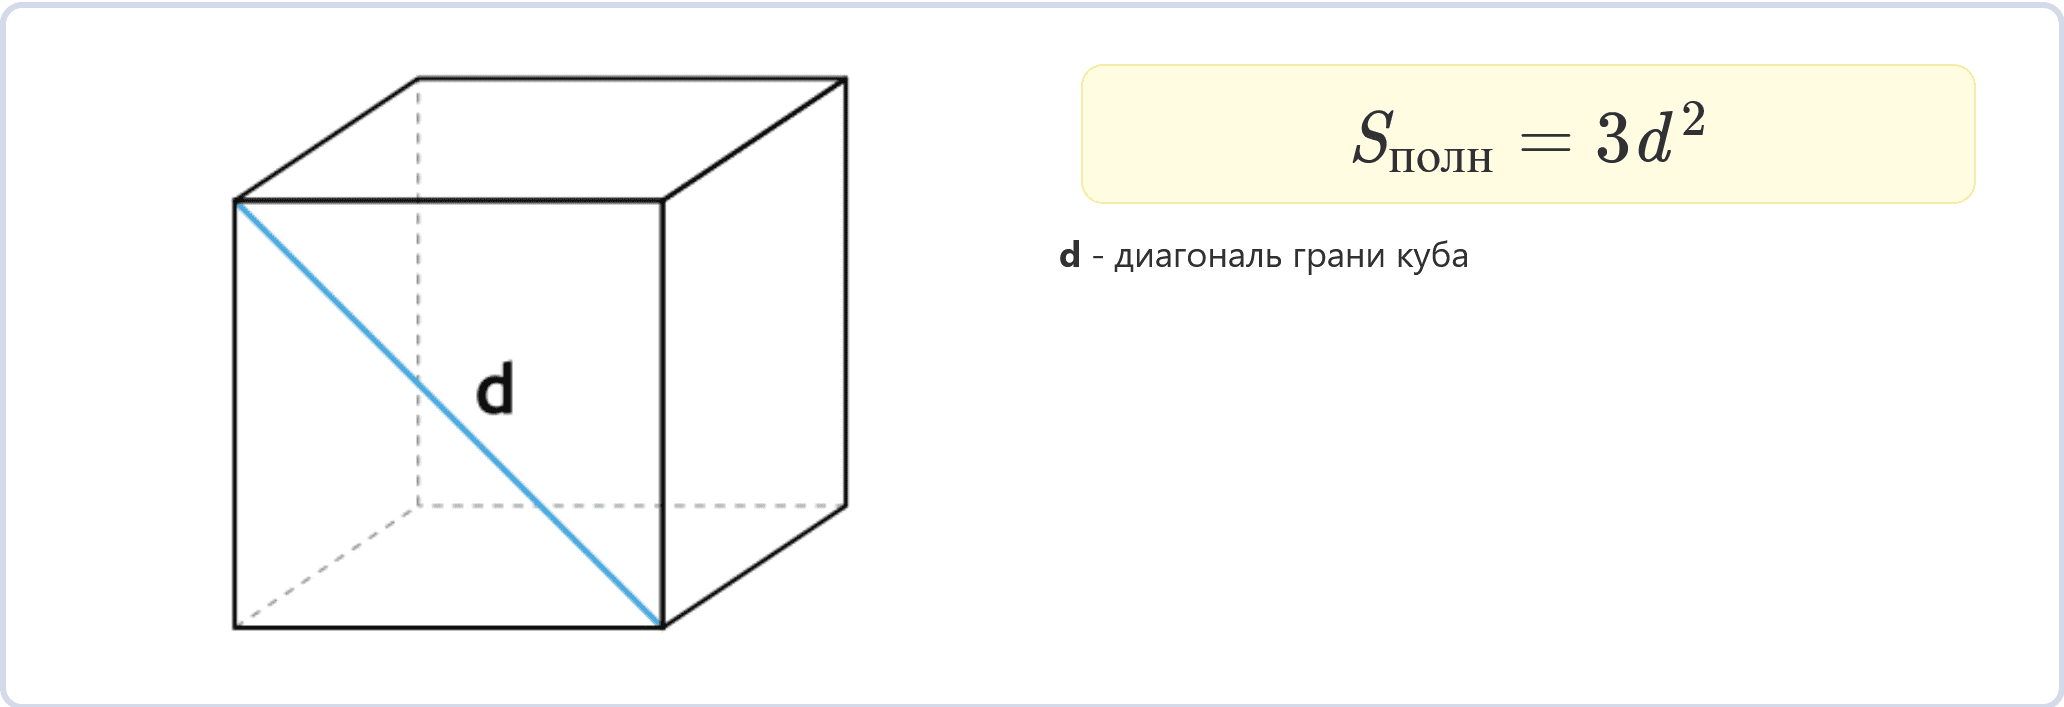 Периметр грани куба равна